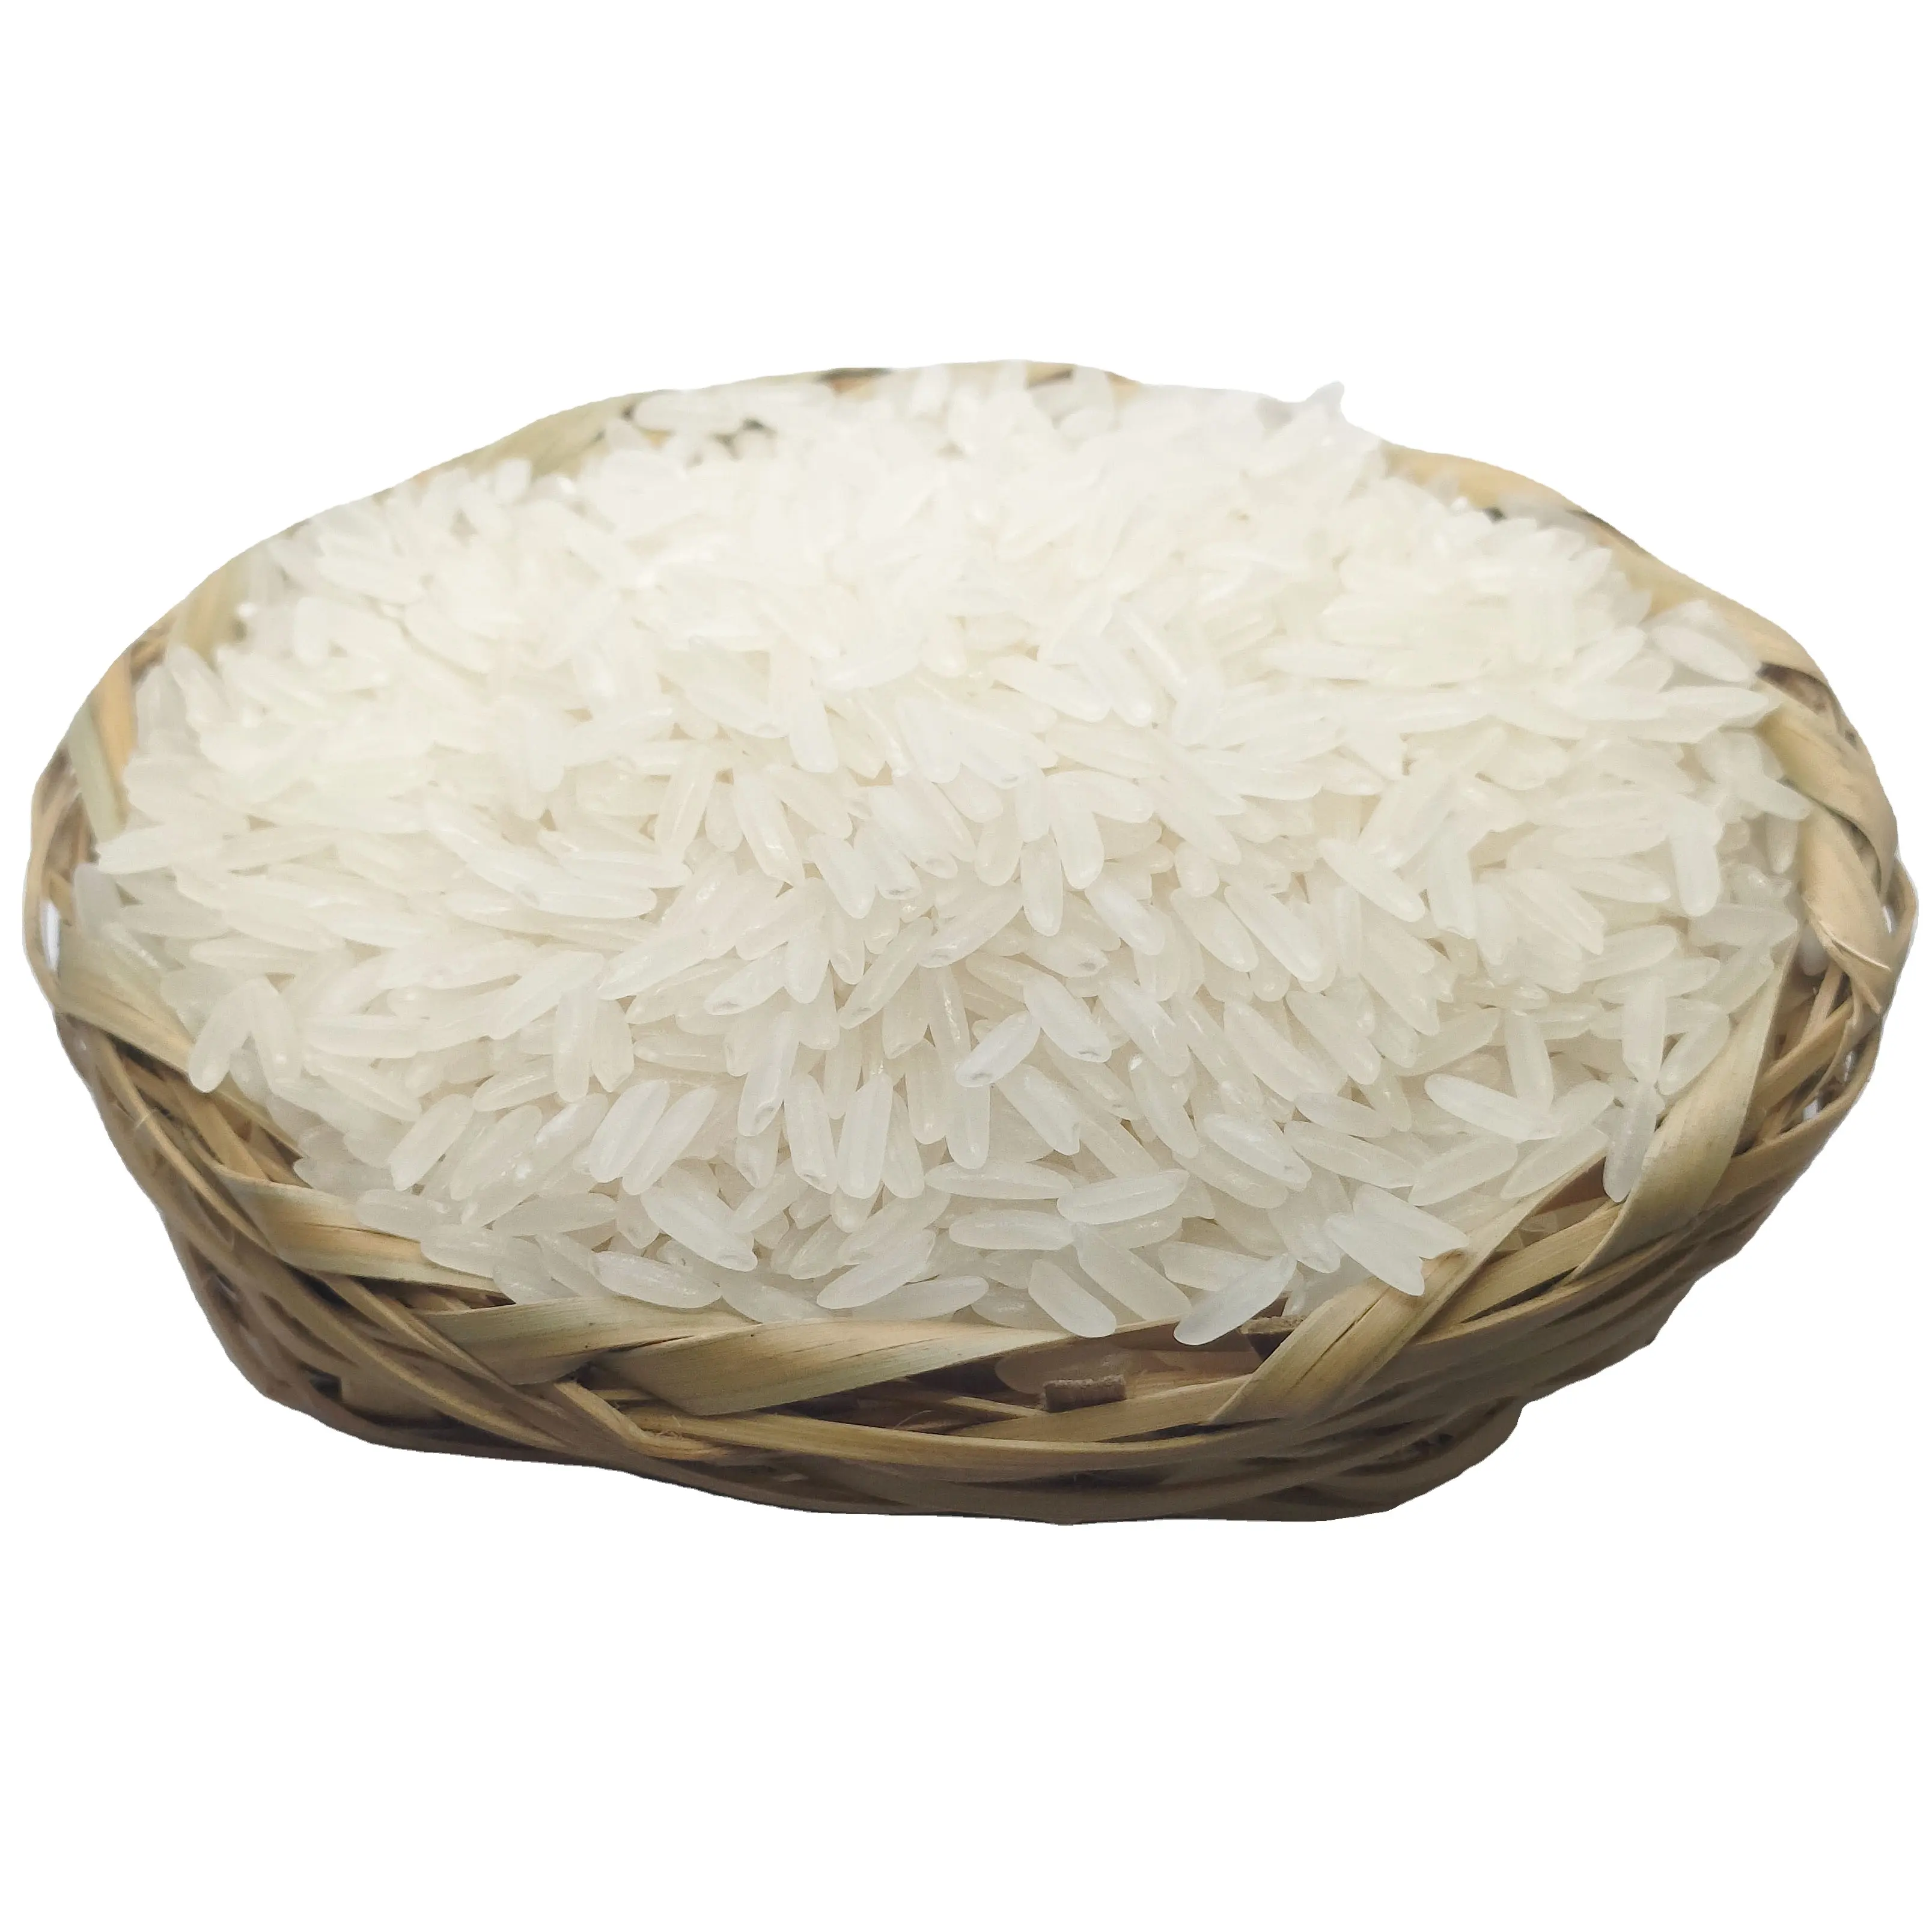 최고 판매 가격-재스민 쌀 100% 프리미엄 품질과 공장 가격 25kg 새 가방 포장 긴 곡물 흰 쌀